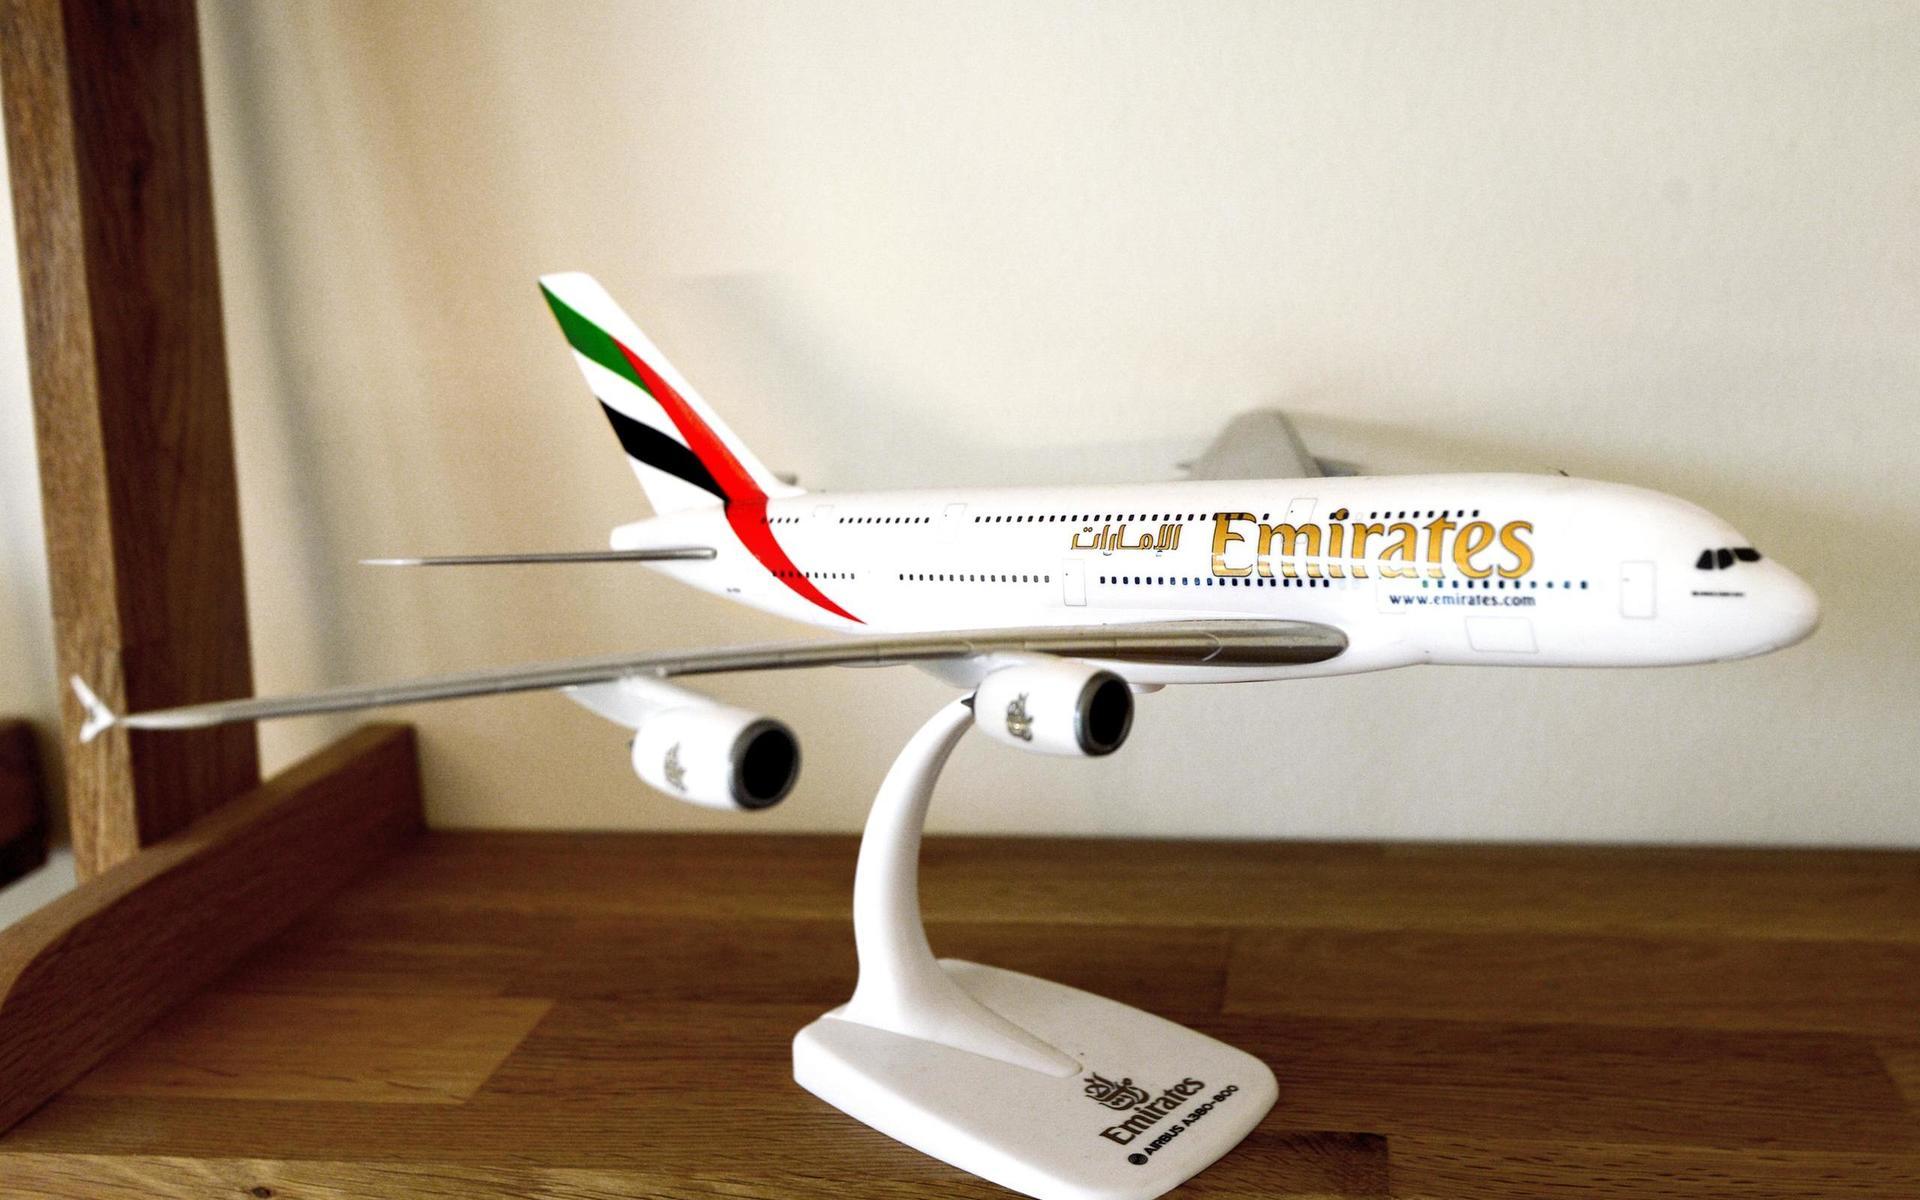 Det står flera modeller av olika flygplan som Niklas Halén flugit genom åren. Här syns värstingen: Airbus A380, världens största flyg.